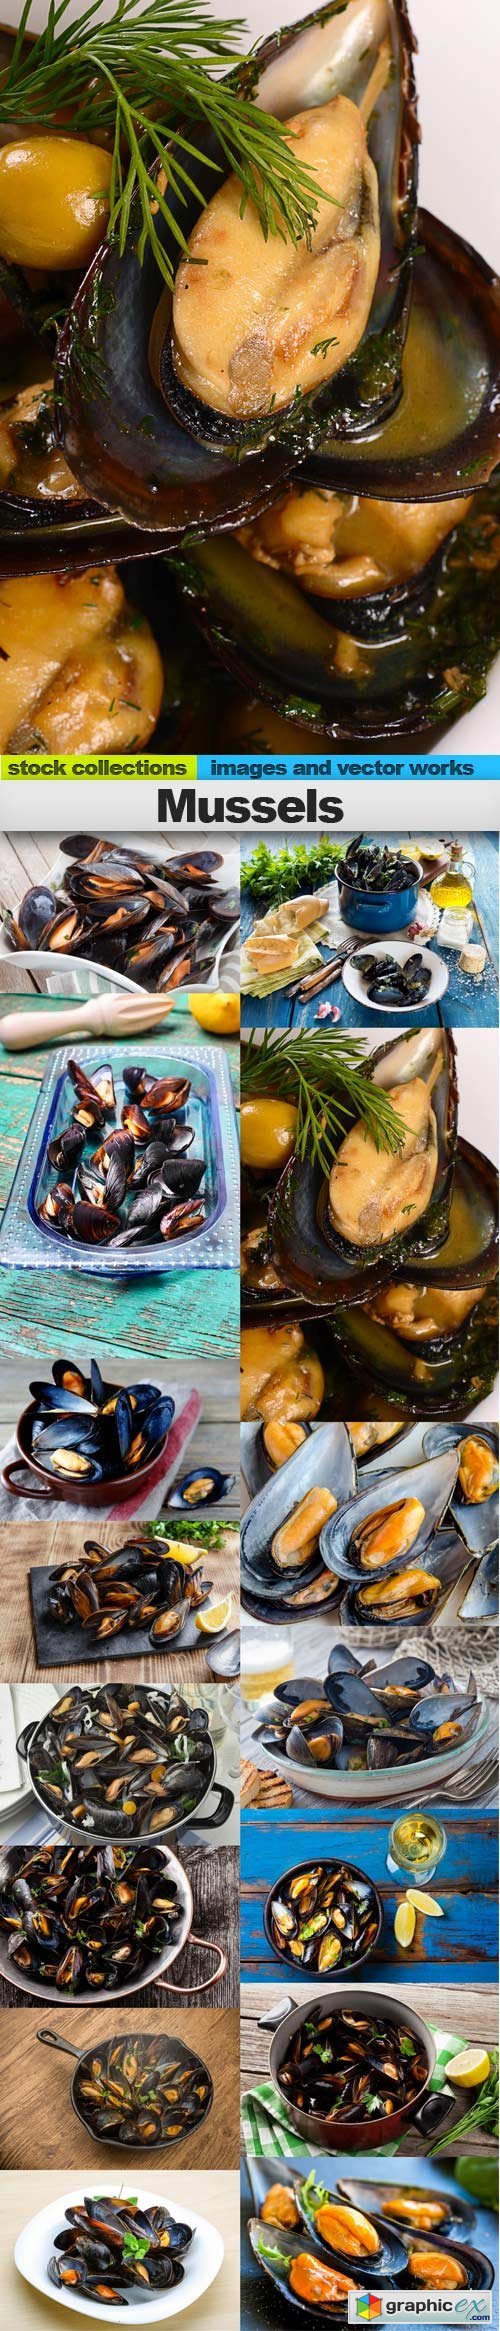 Mussels, 15 x UHQ JPEG